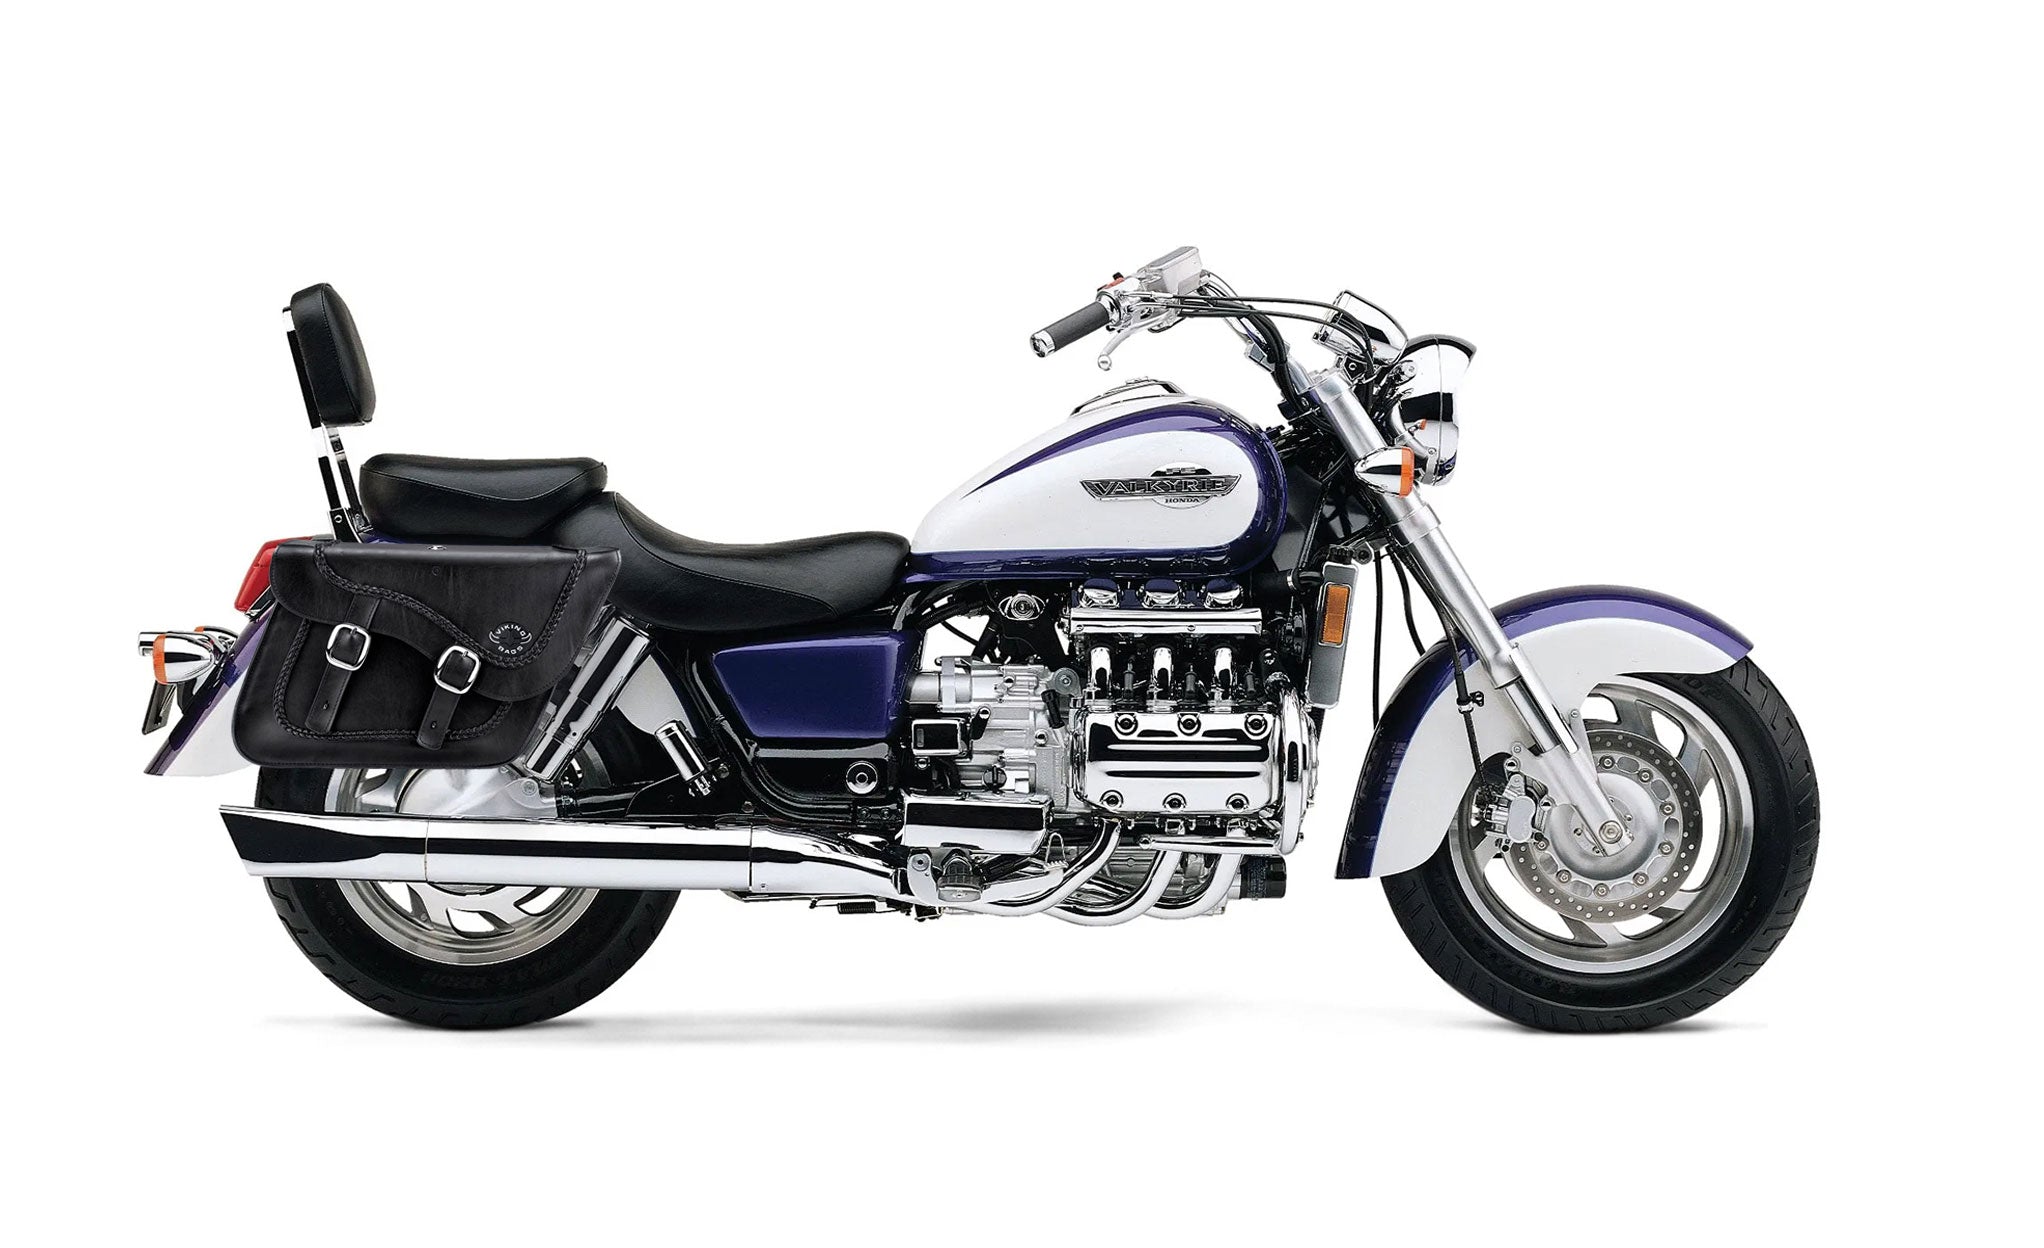 Viking Americano Honda Valkyrie 1500 Interstate Braided Large Leather Motorcycle Saddlebags on Bike Photo @expand